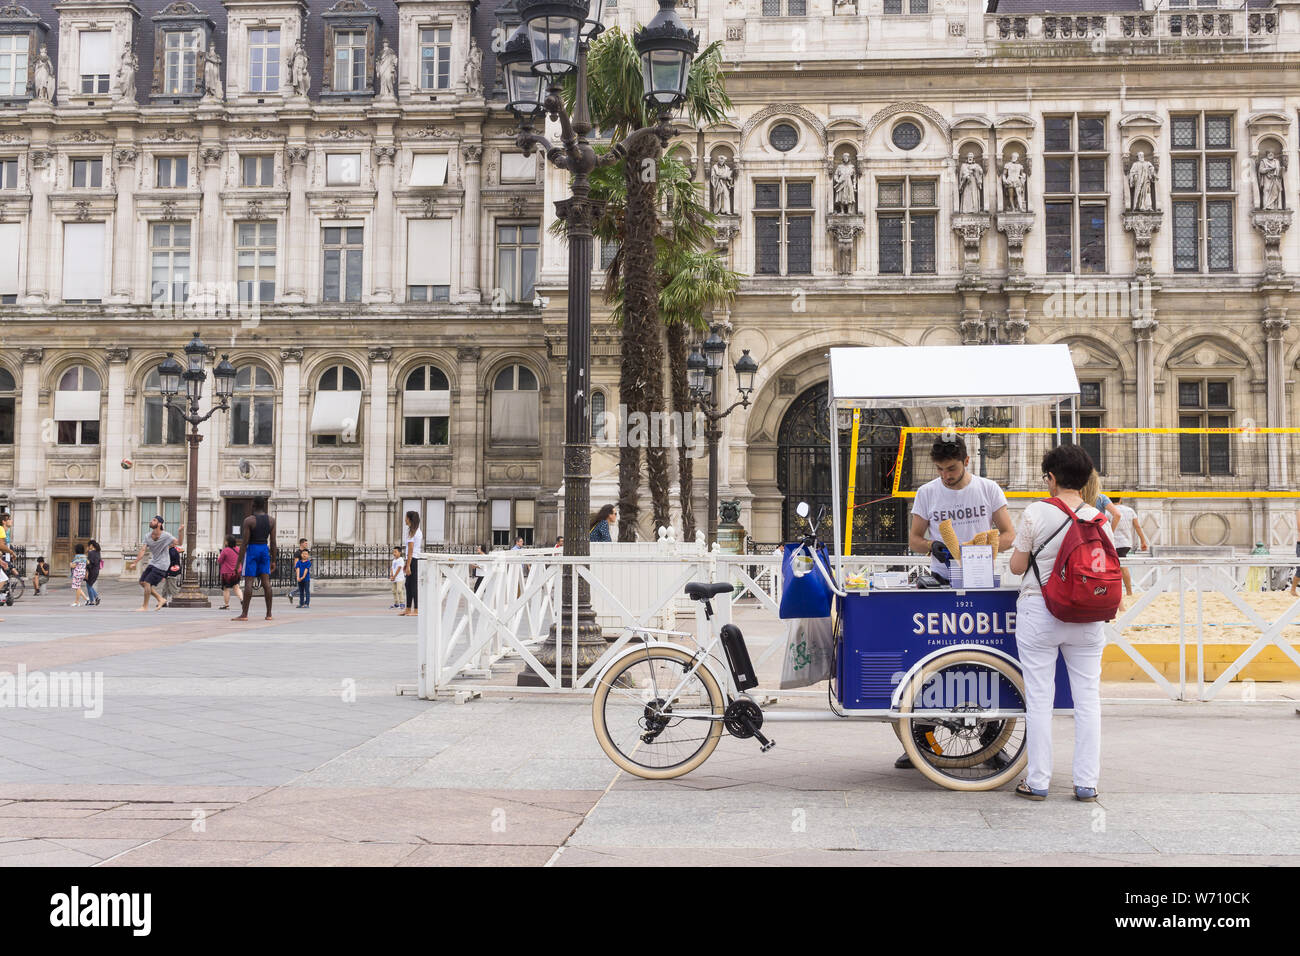 Paris Street Food - eine Frau Tourist kauft ein Eis Senoble von einem Fahrrad Warenkorb auf einer Straße in Paris. Frankreich, Europa. Stockfoto